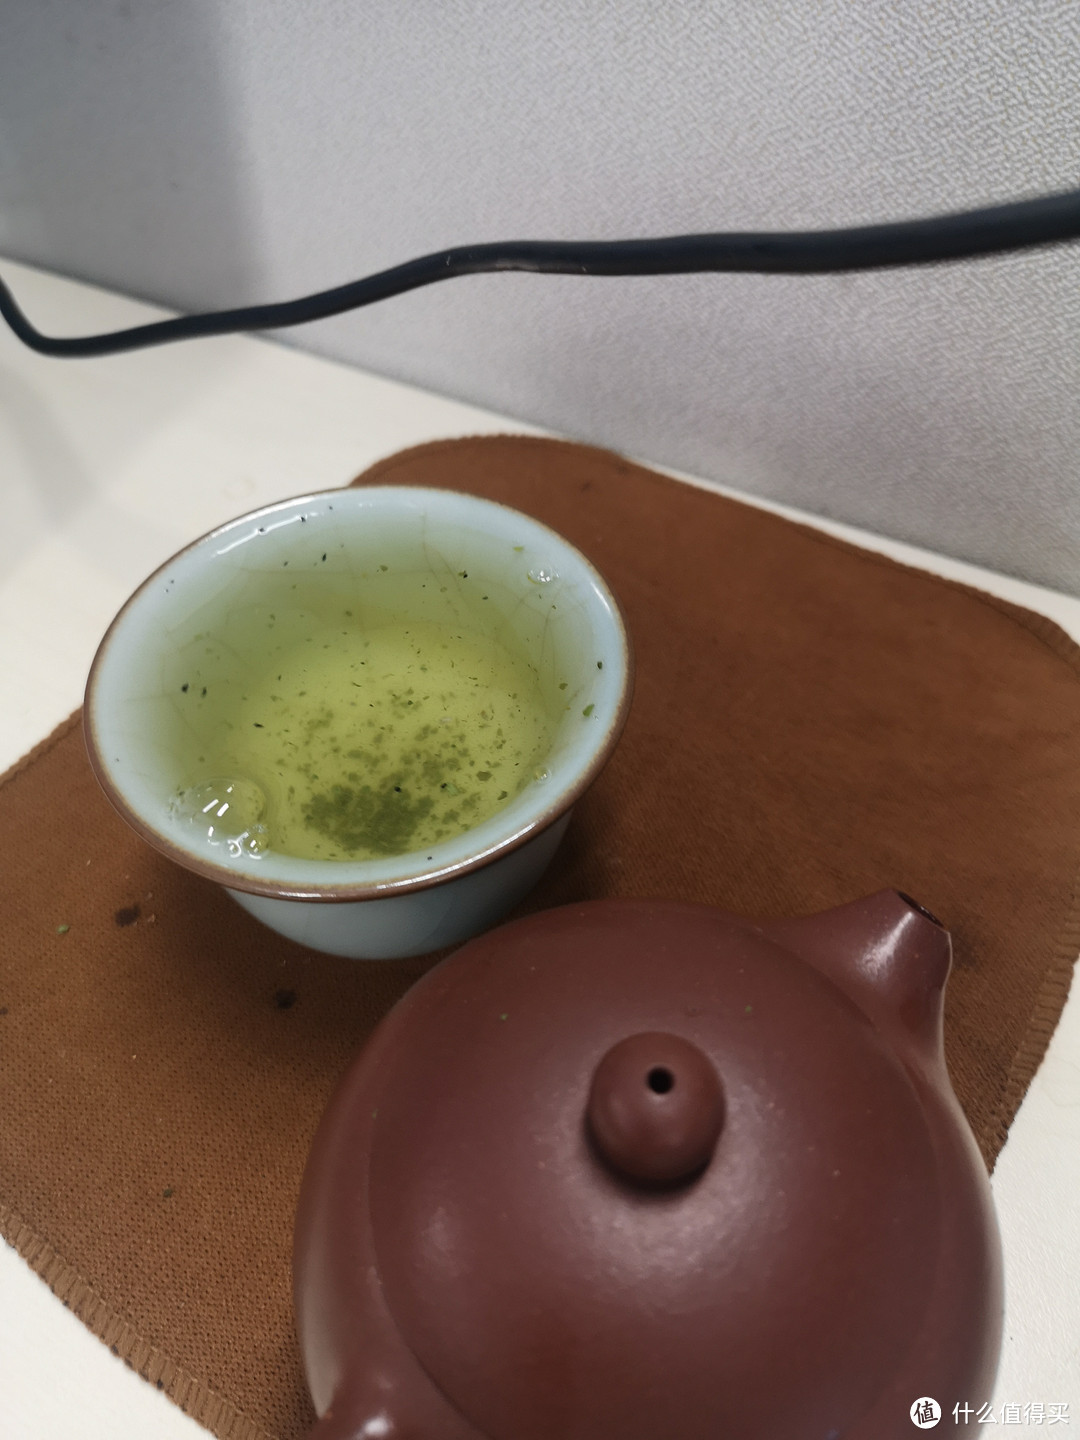 9.9的绿茶还很好喝